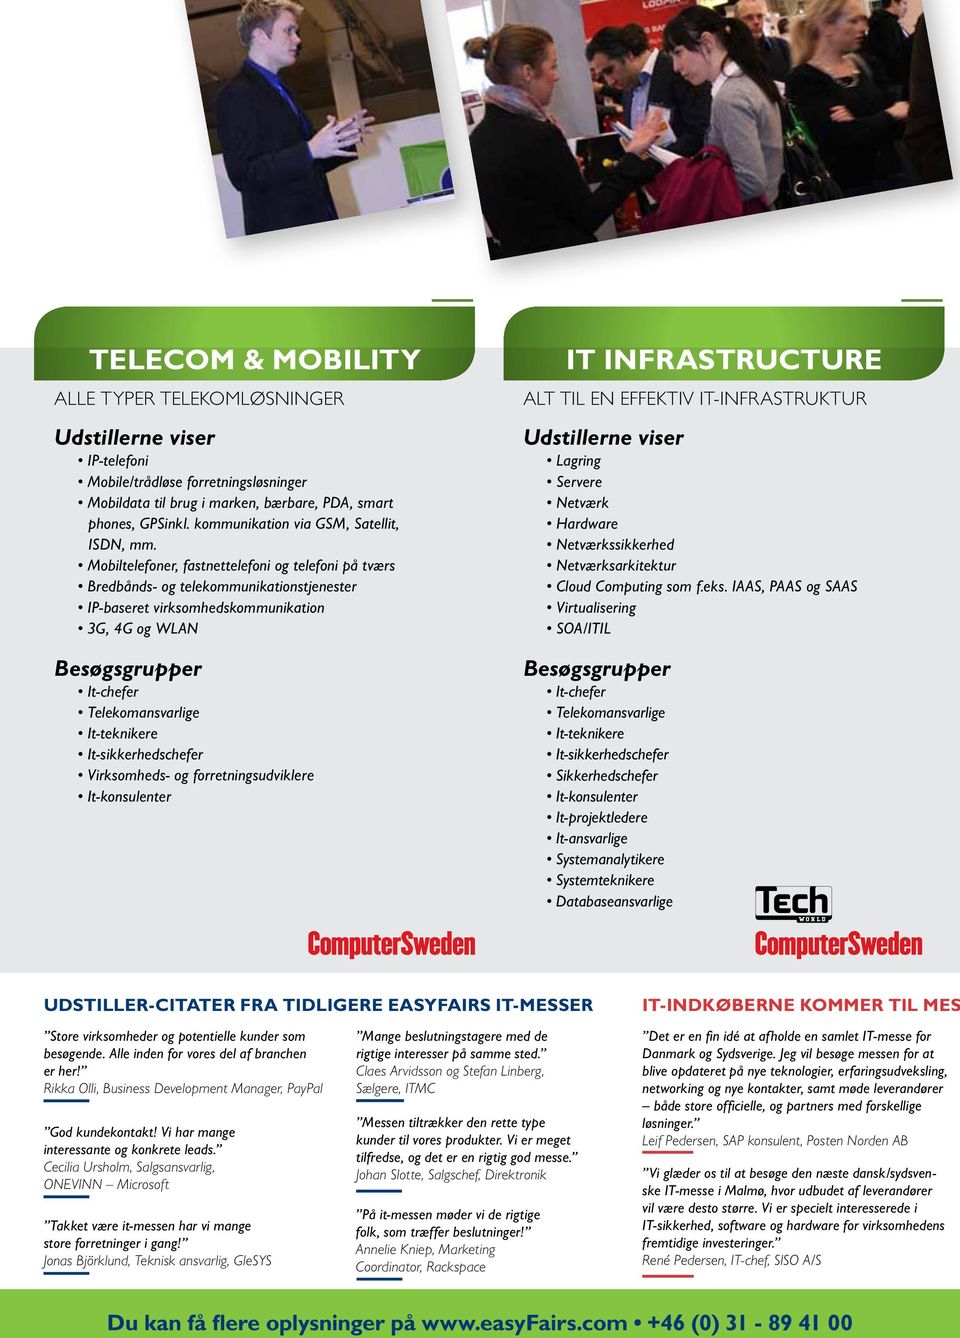 Mobiltelefoner, fastnettelefoni og telefoni på tværs Bredbånds- og telekommunikationstjenester IP-baseret virksomhedskommunikation 3G, 4G og WLAN Telekomansvarlige It-teknikere Virksomheds- og